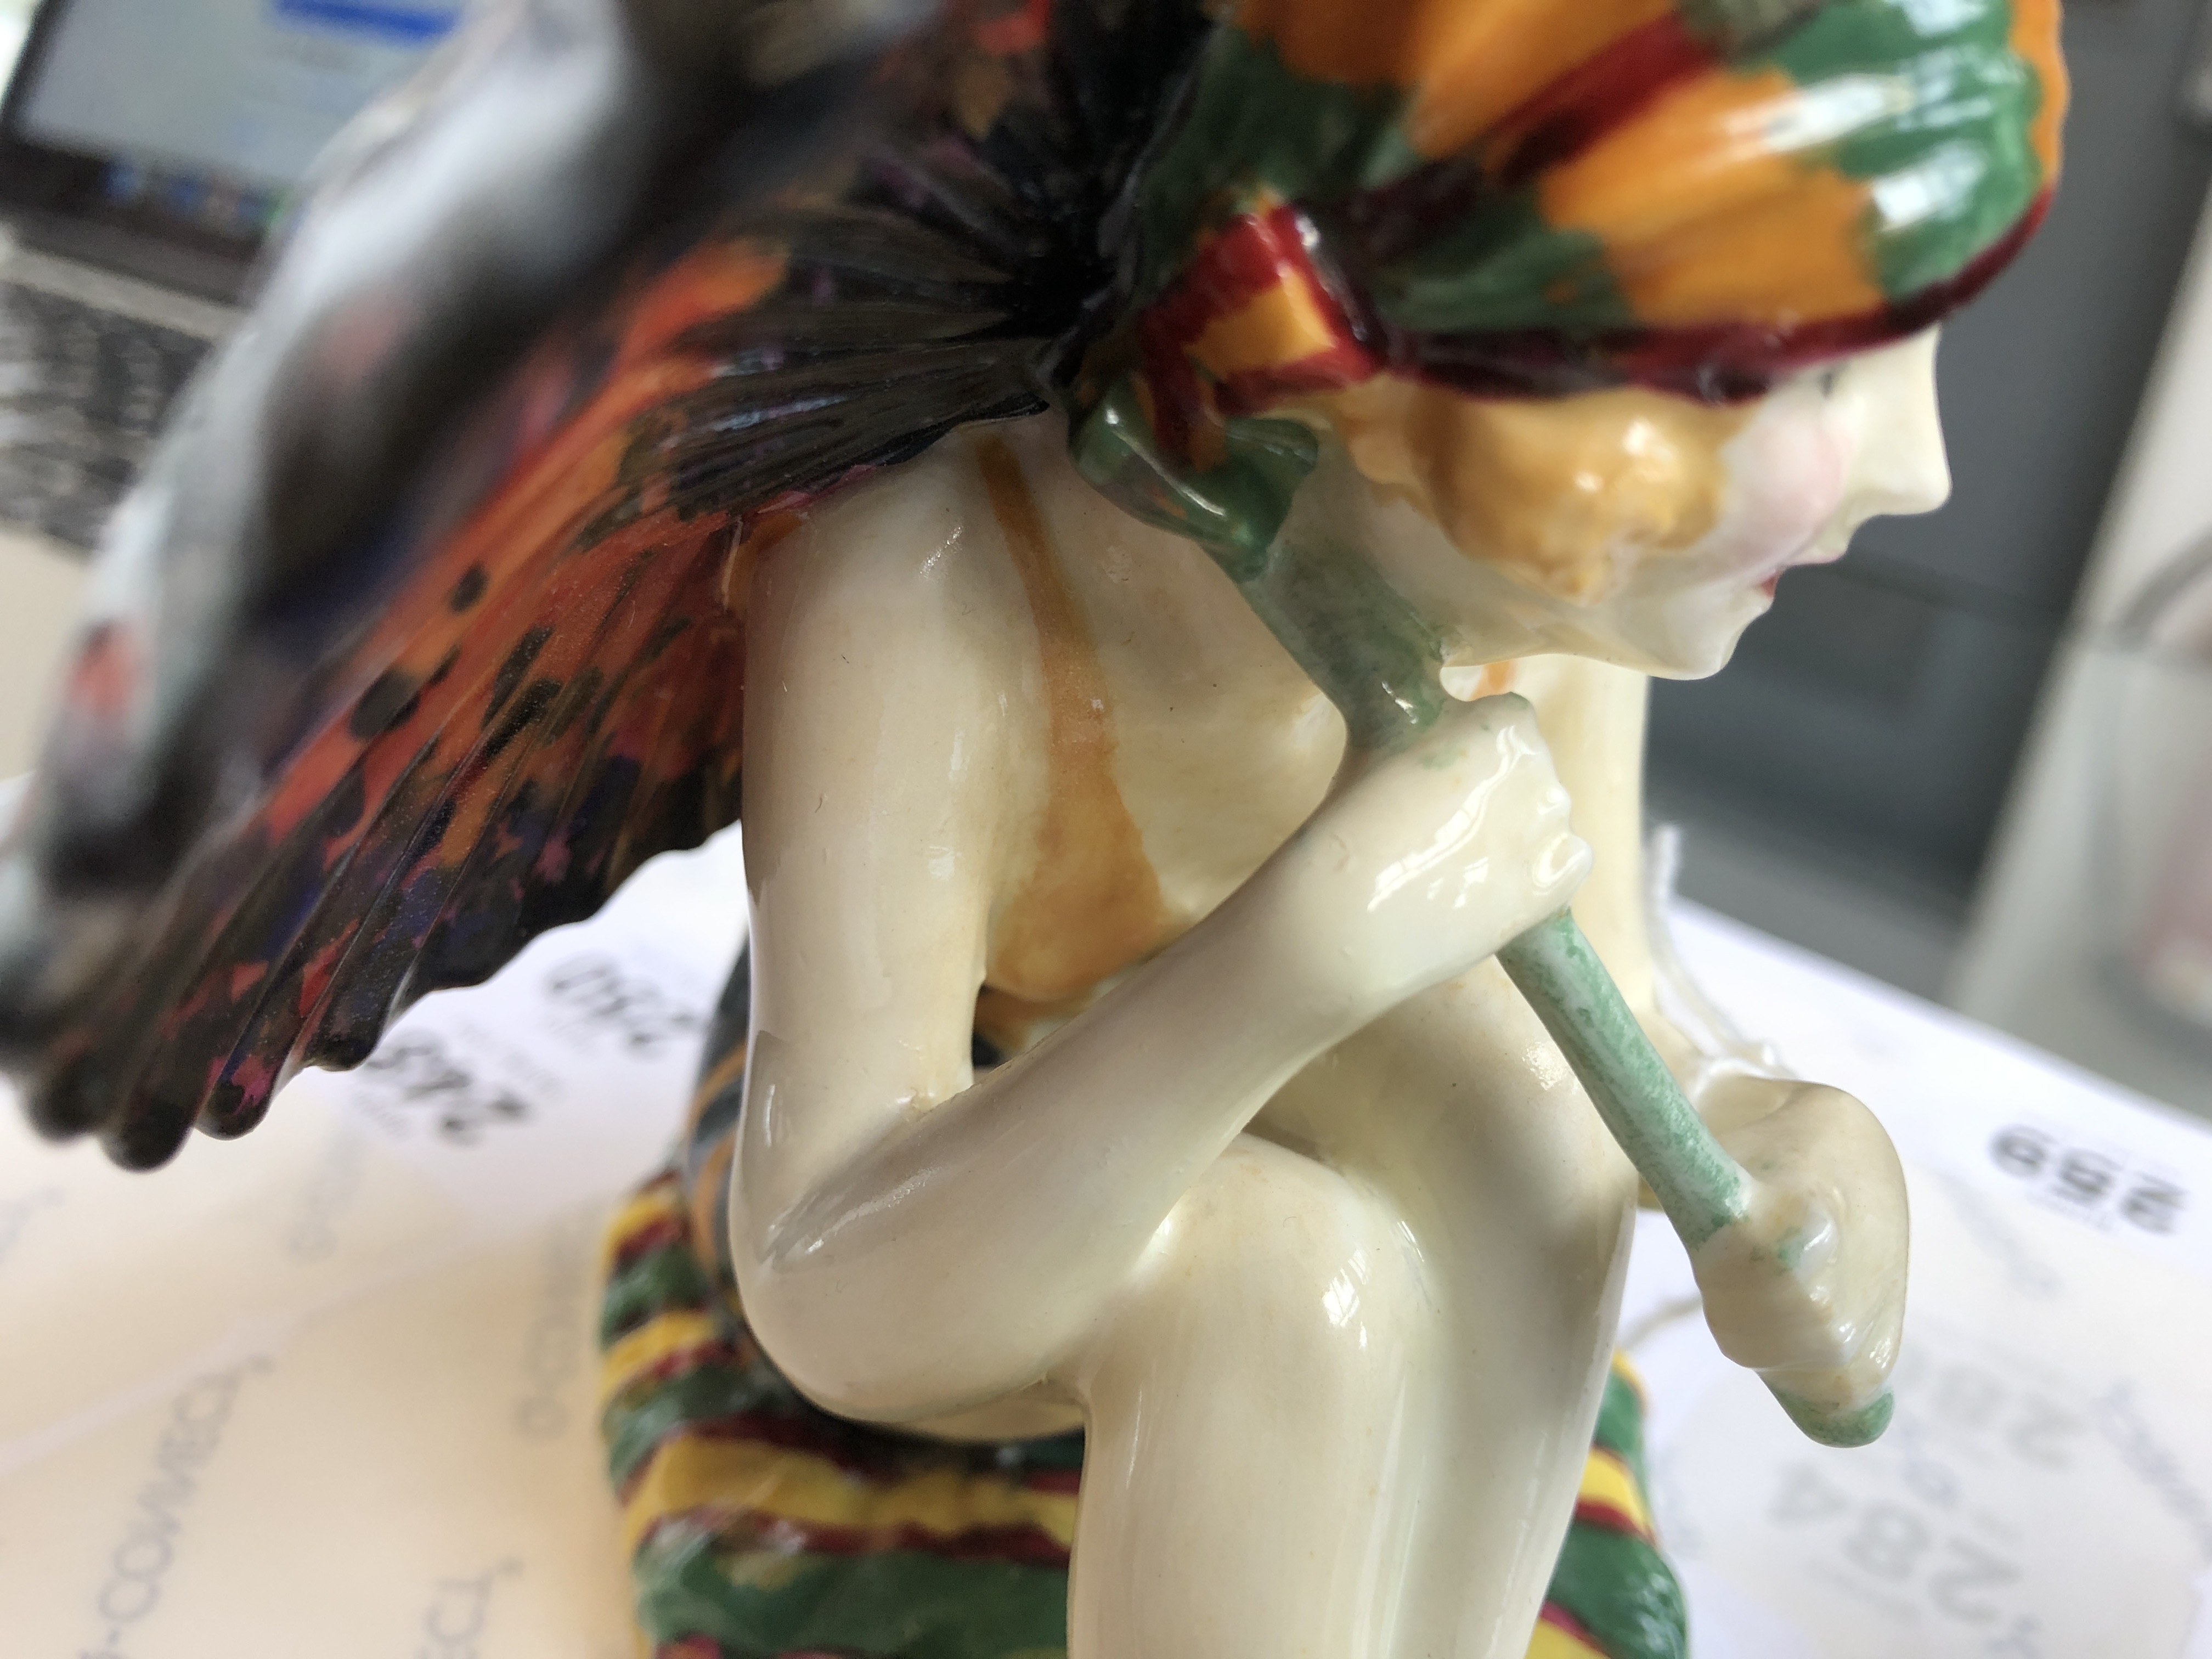 A Royal Doulton Art Deco figurine, 'Sunshine Girl', model no. HN1348, designed by Leslie - Image 5 of 9